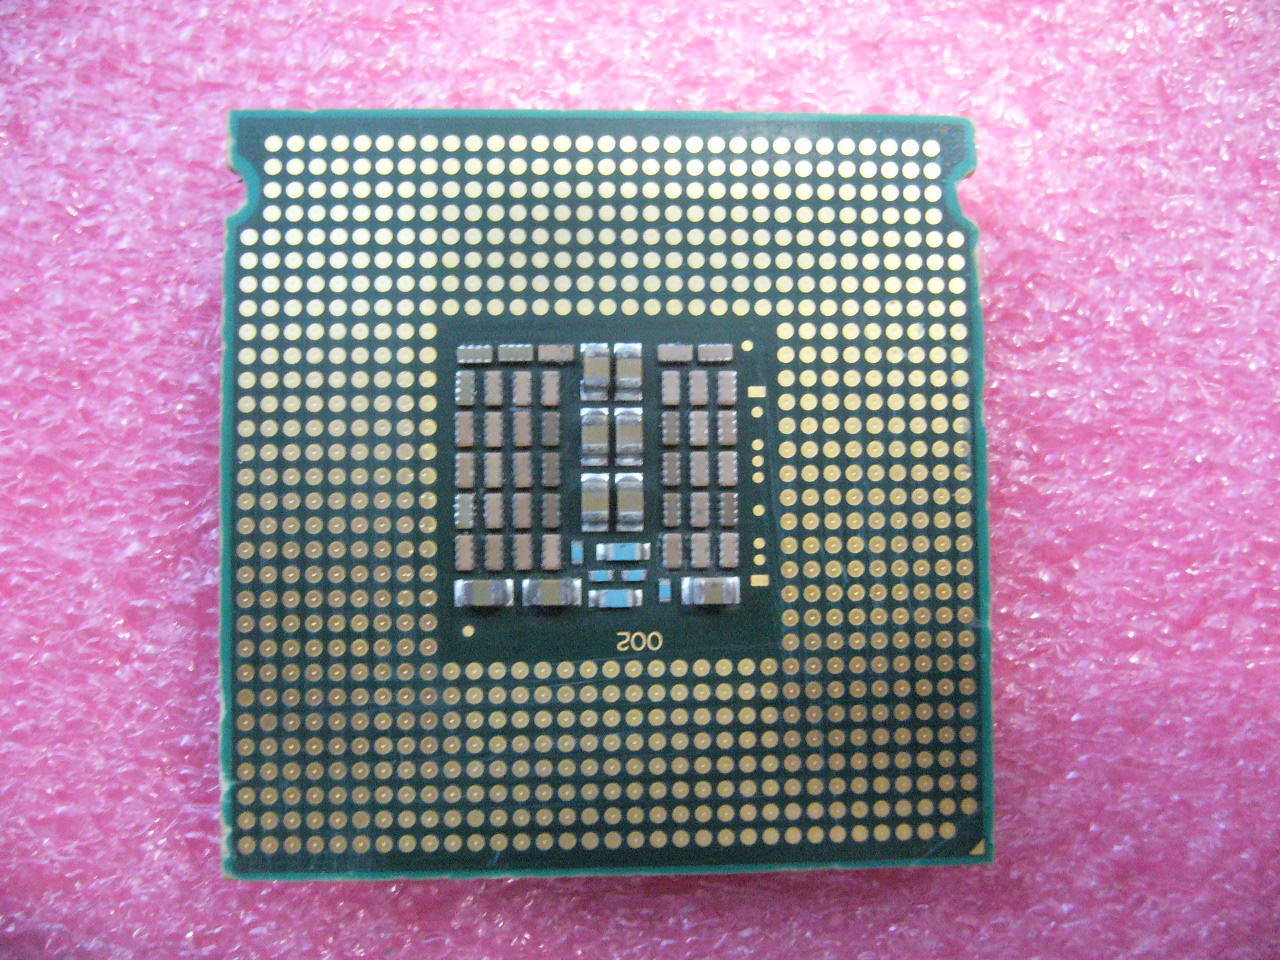 QTY 1x Intel Xeon CPU Quad Core X5450 3.00Ghz/12MB/1333Mhz LGA771 SLBBE - Click Image to Close